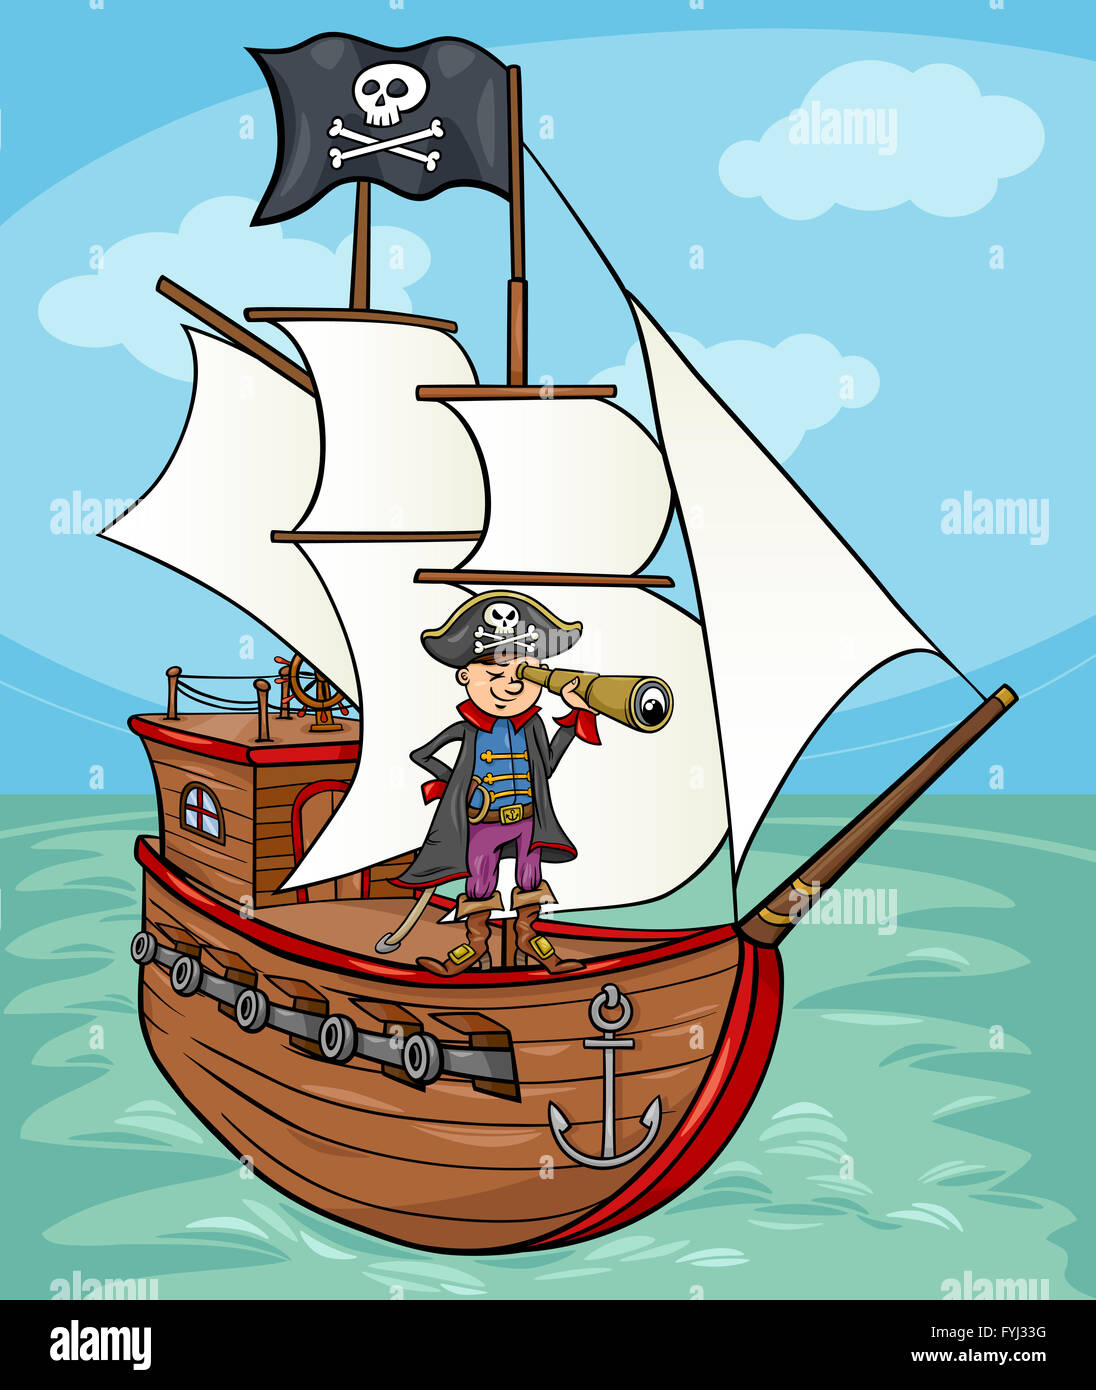 Pirate Boat Cartoon